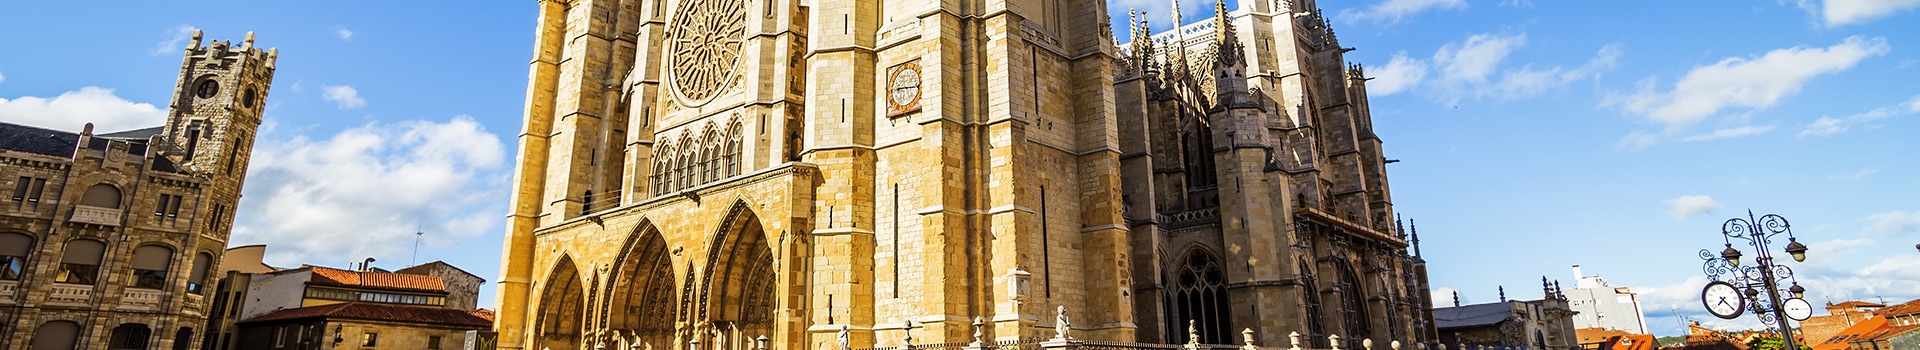 Santiago de Compostela - León